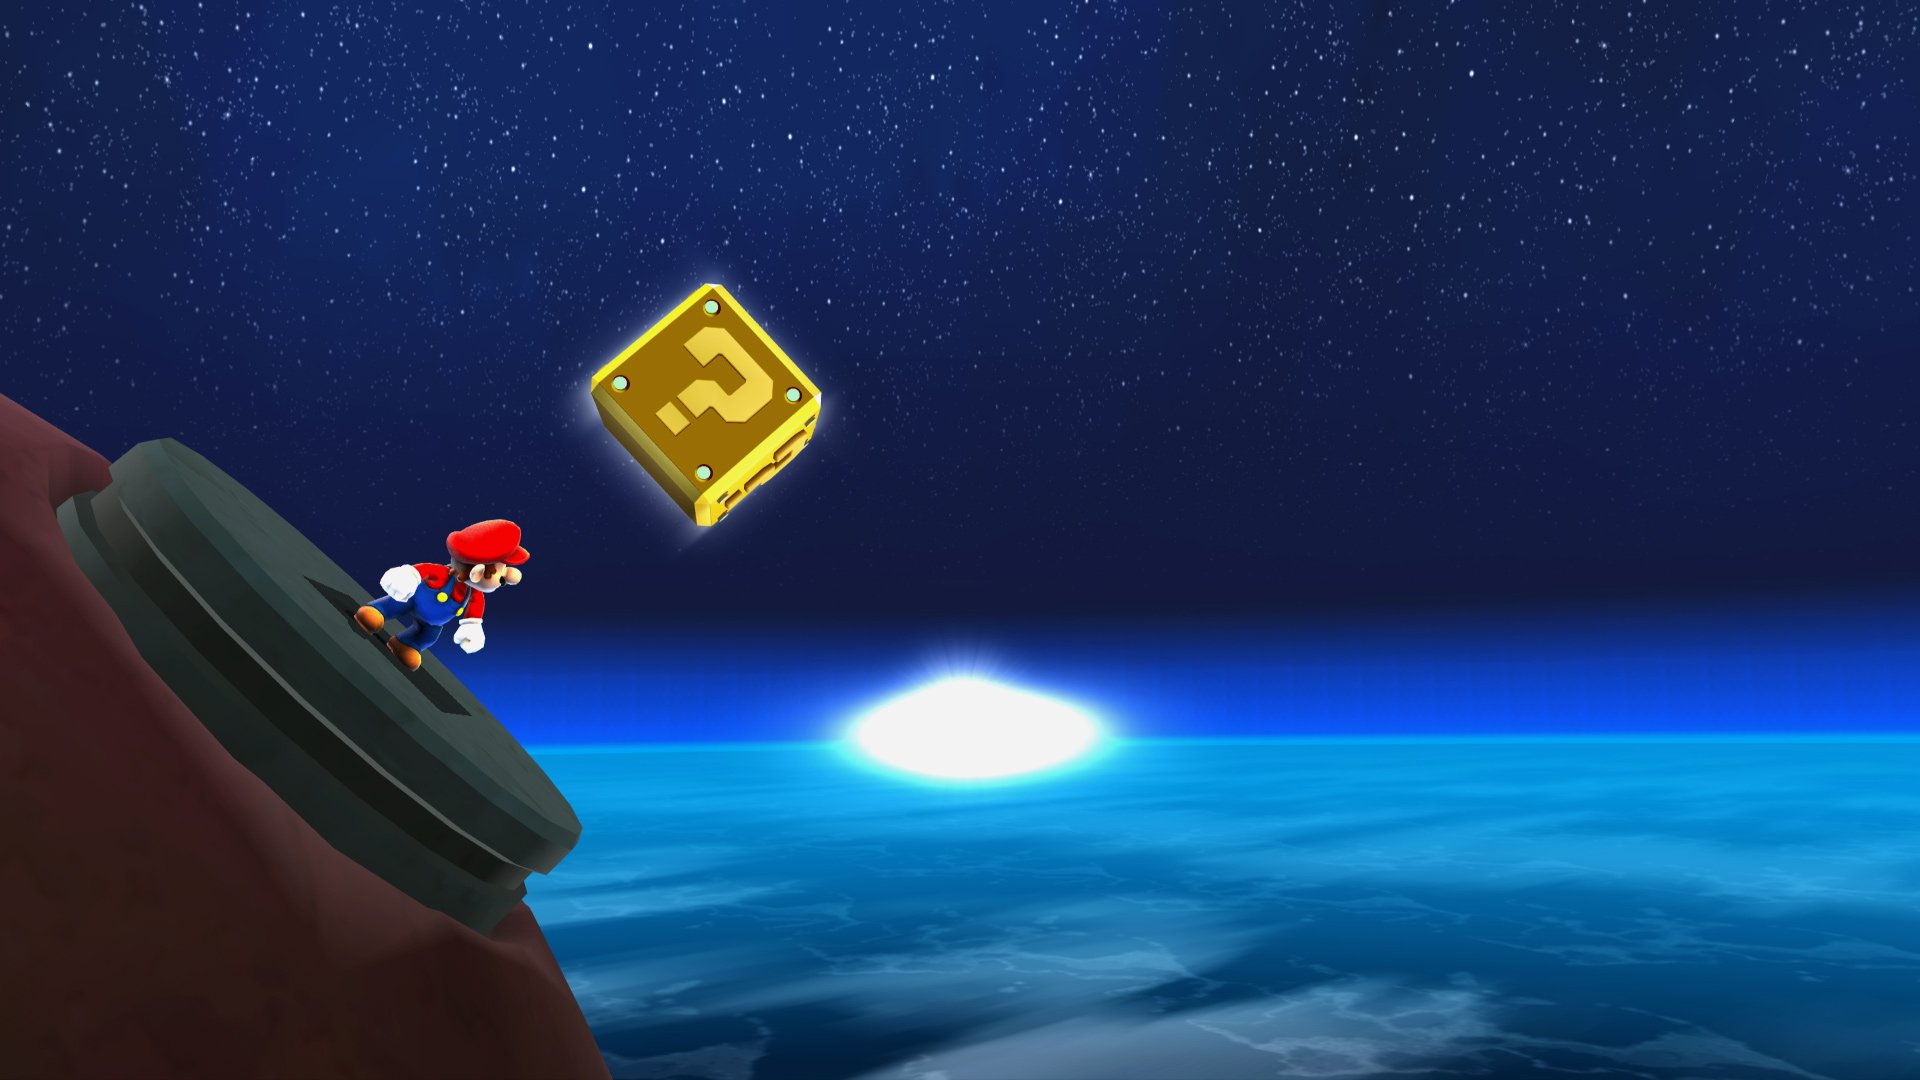 Trò chơi Super Mario Galaxy luôn là một sự lựa chọn tuyệt vời cho những ai yêu thích phiêu lưu trong không gian. Hãy tải ngay hình nền Super Mario Galaxy HD để có những trải nghiệm thật tuyệt vời khi thấy mỗi khoảnh khắc đẹp như mơ trên màn hình của bạn!